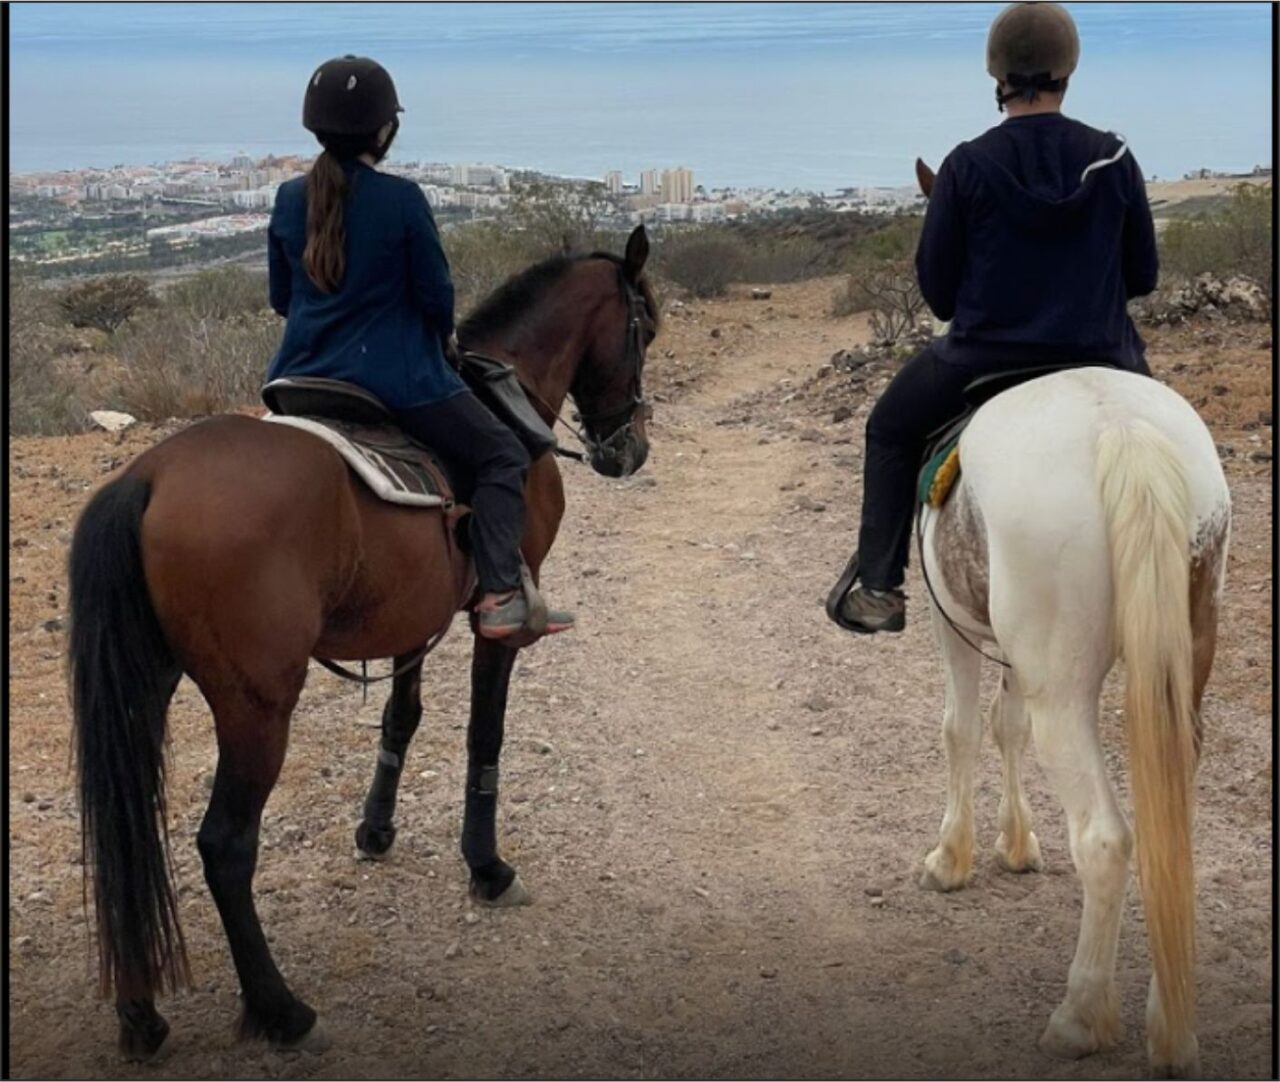 excursiones-a-caballo-tenerife-sur-canarias-anuncios-clasificados-anuncios